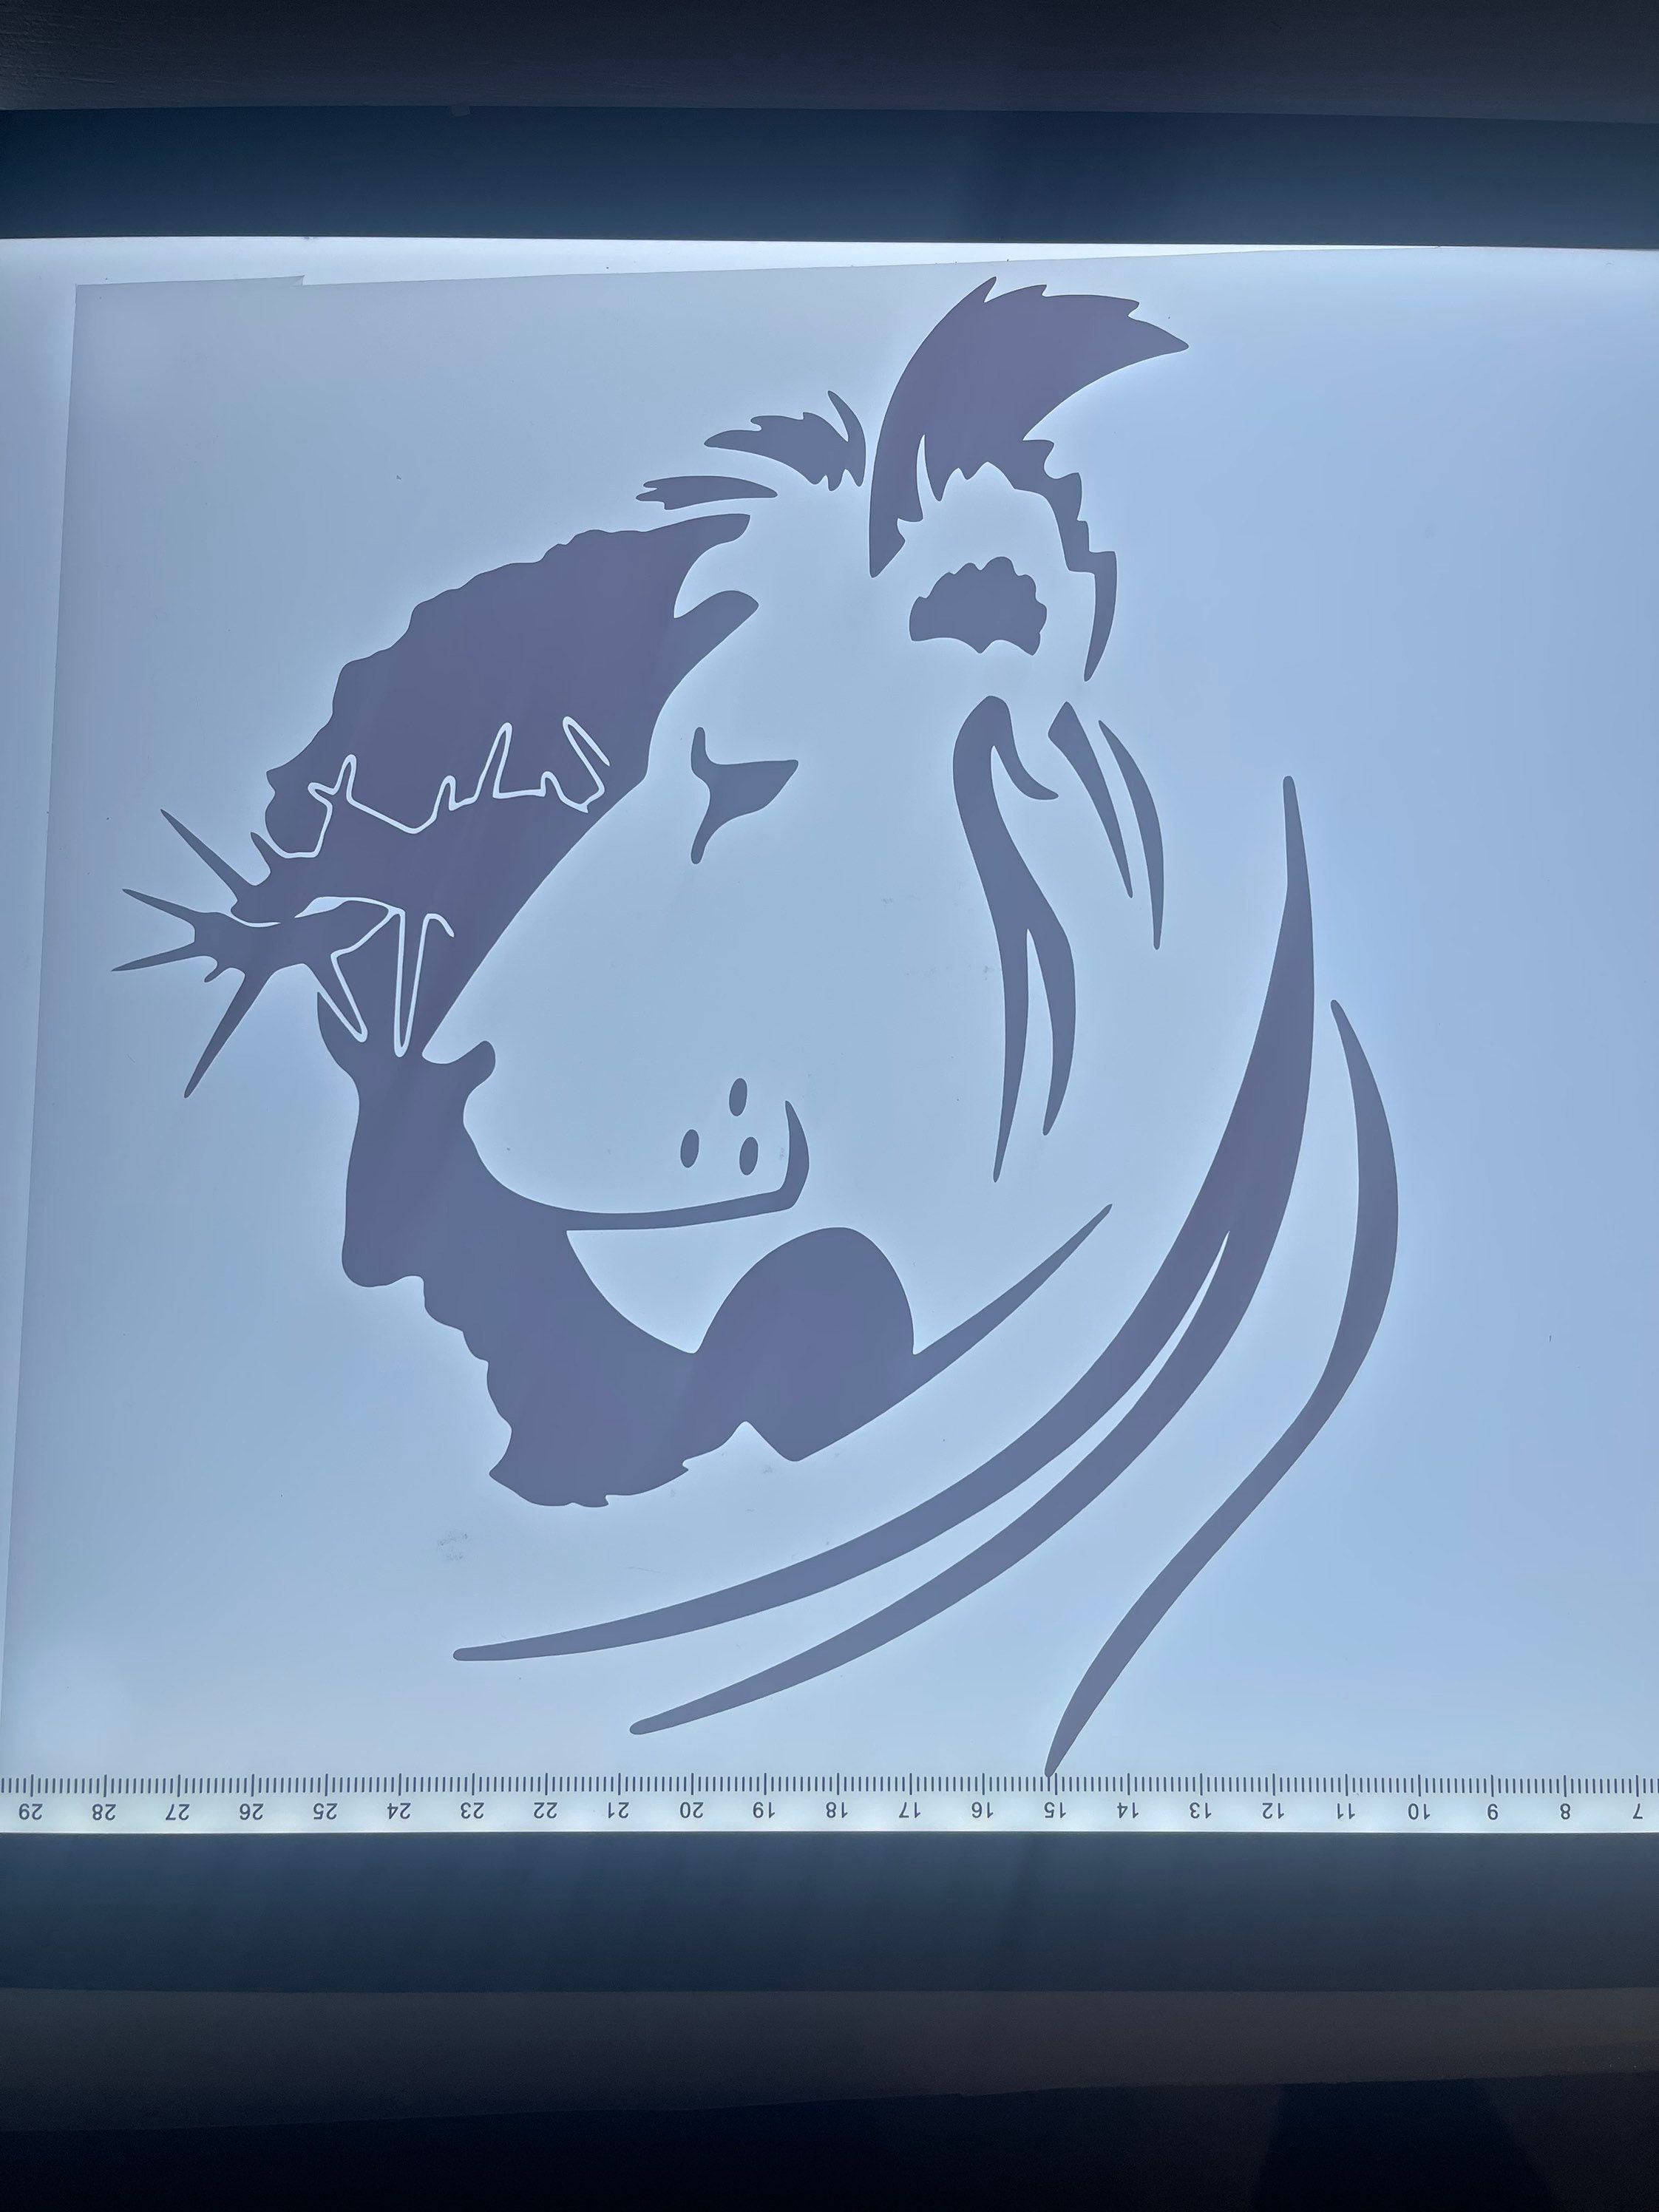 Jesus Lion Christian Vinyl Decal Sticker – FineLineFX Vinyl Decals